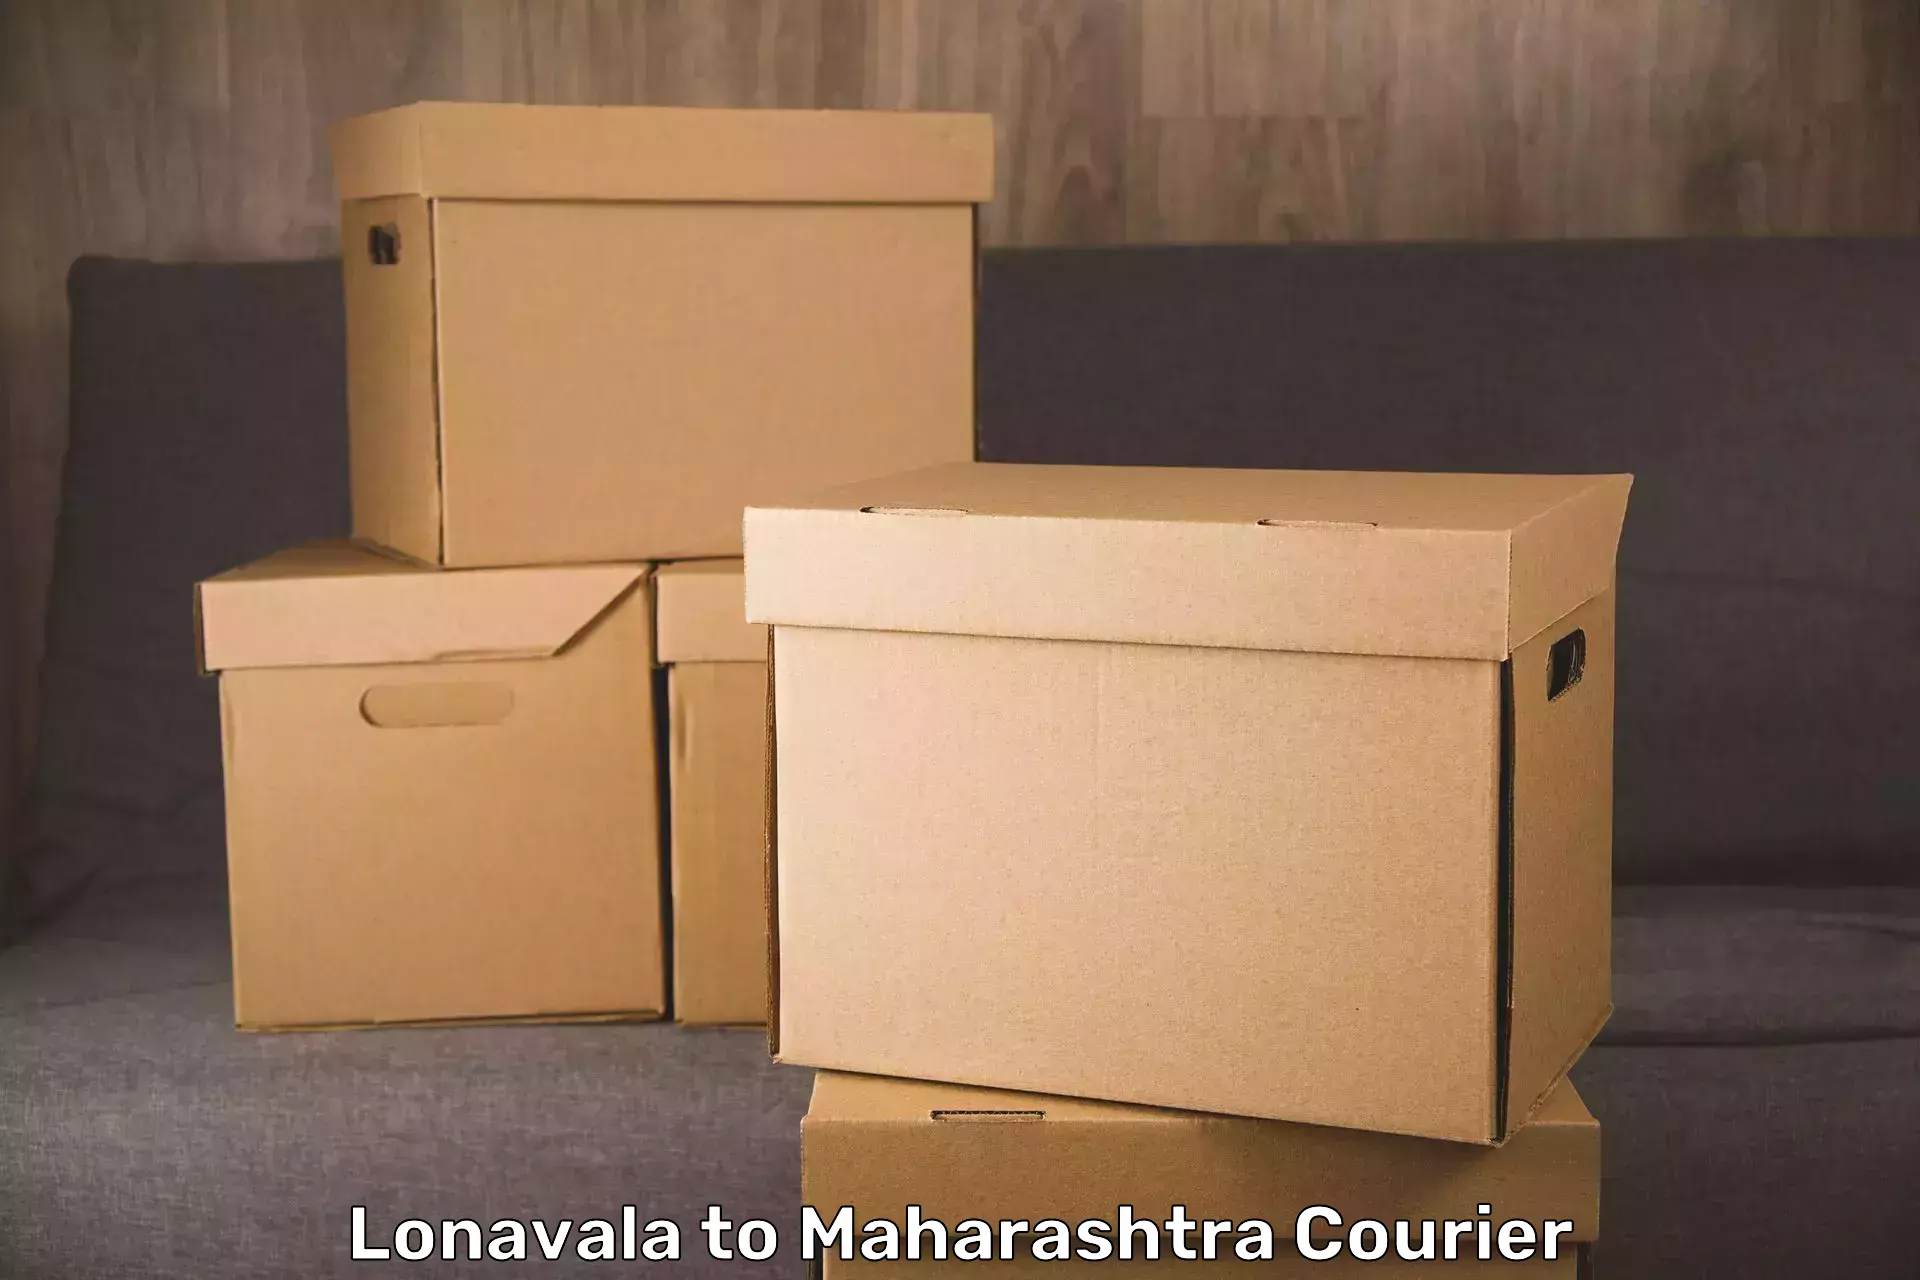 Baggage transport professionals Lonavala to Solapur